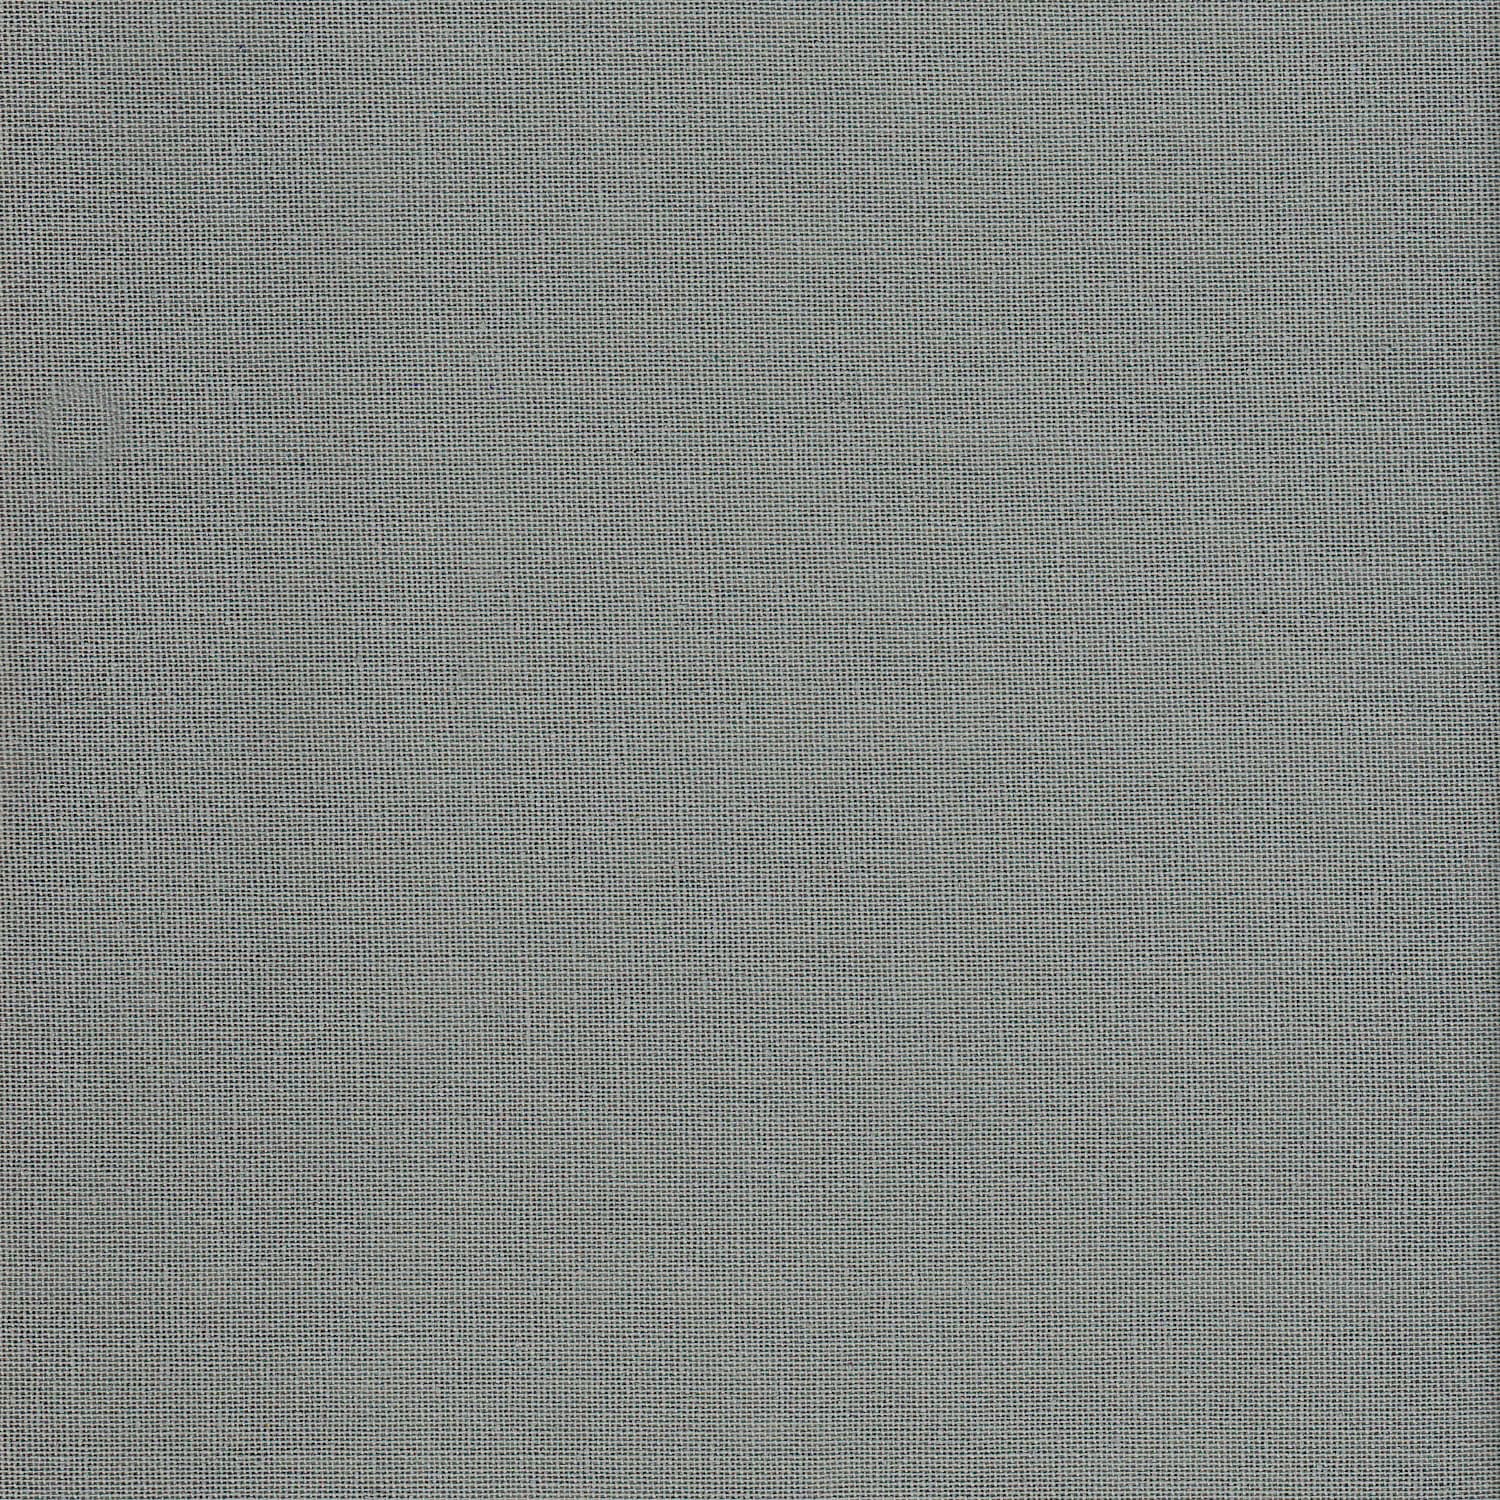 Numero 74 - Heart Cushion - Thai Cotton - Silver Grey - S019